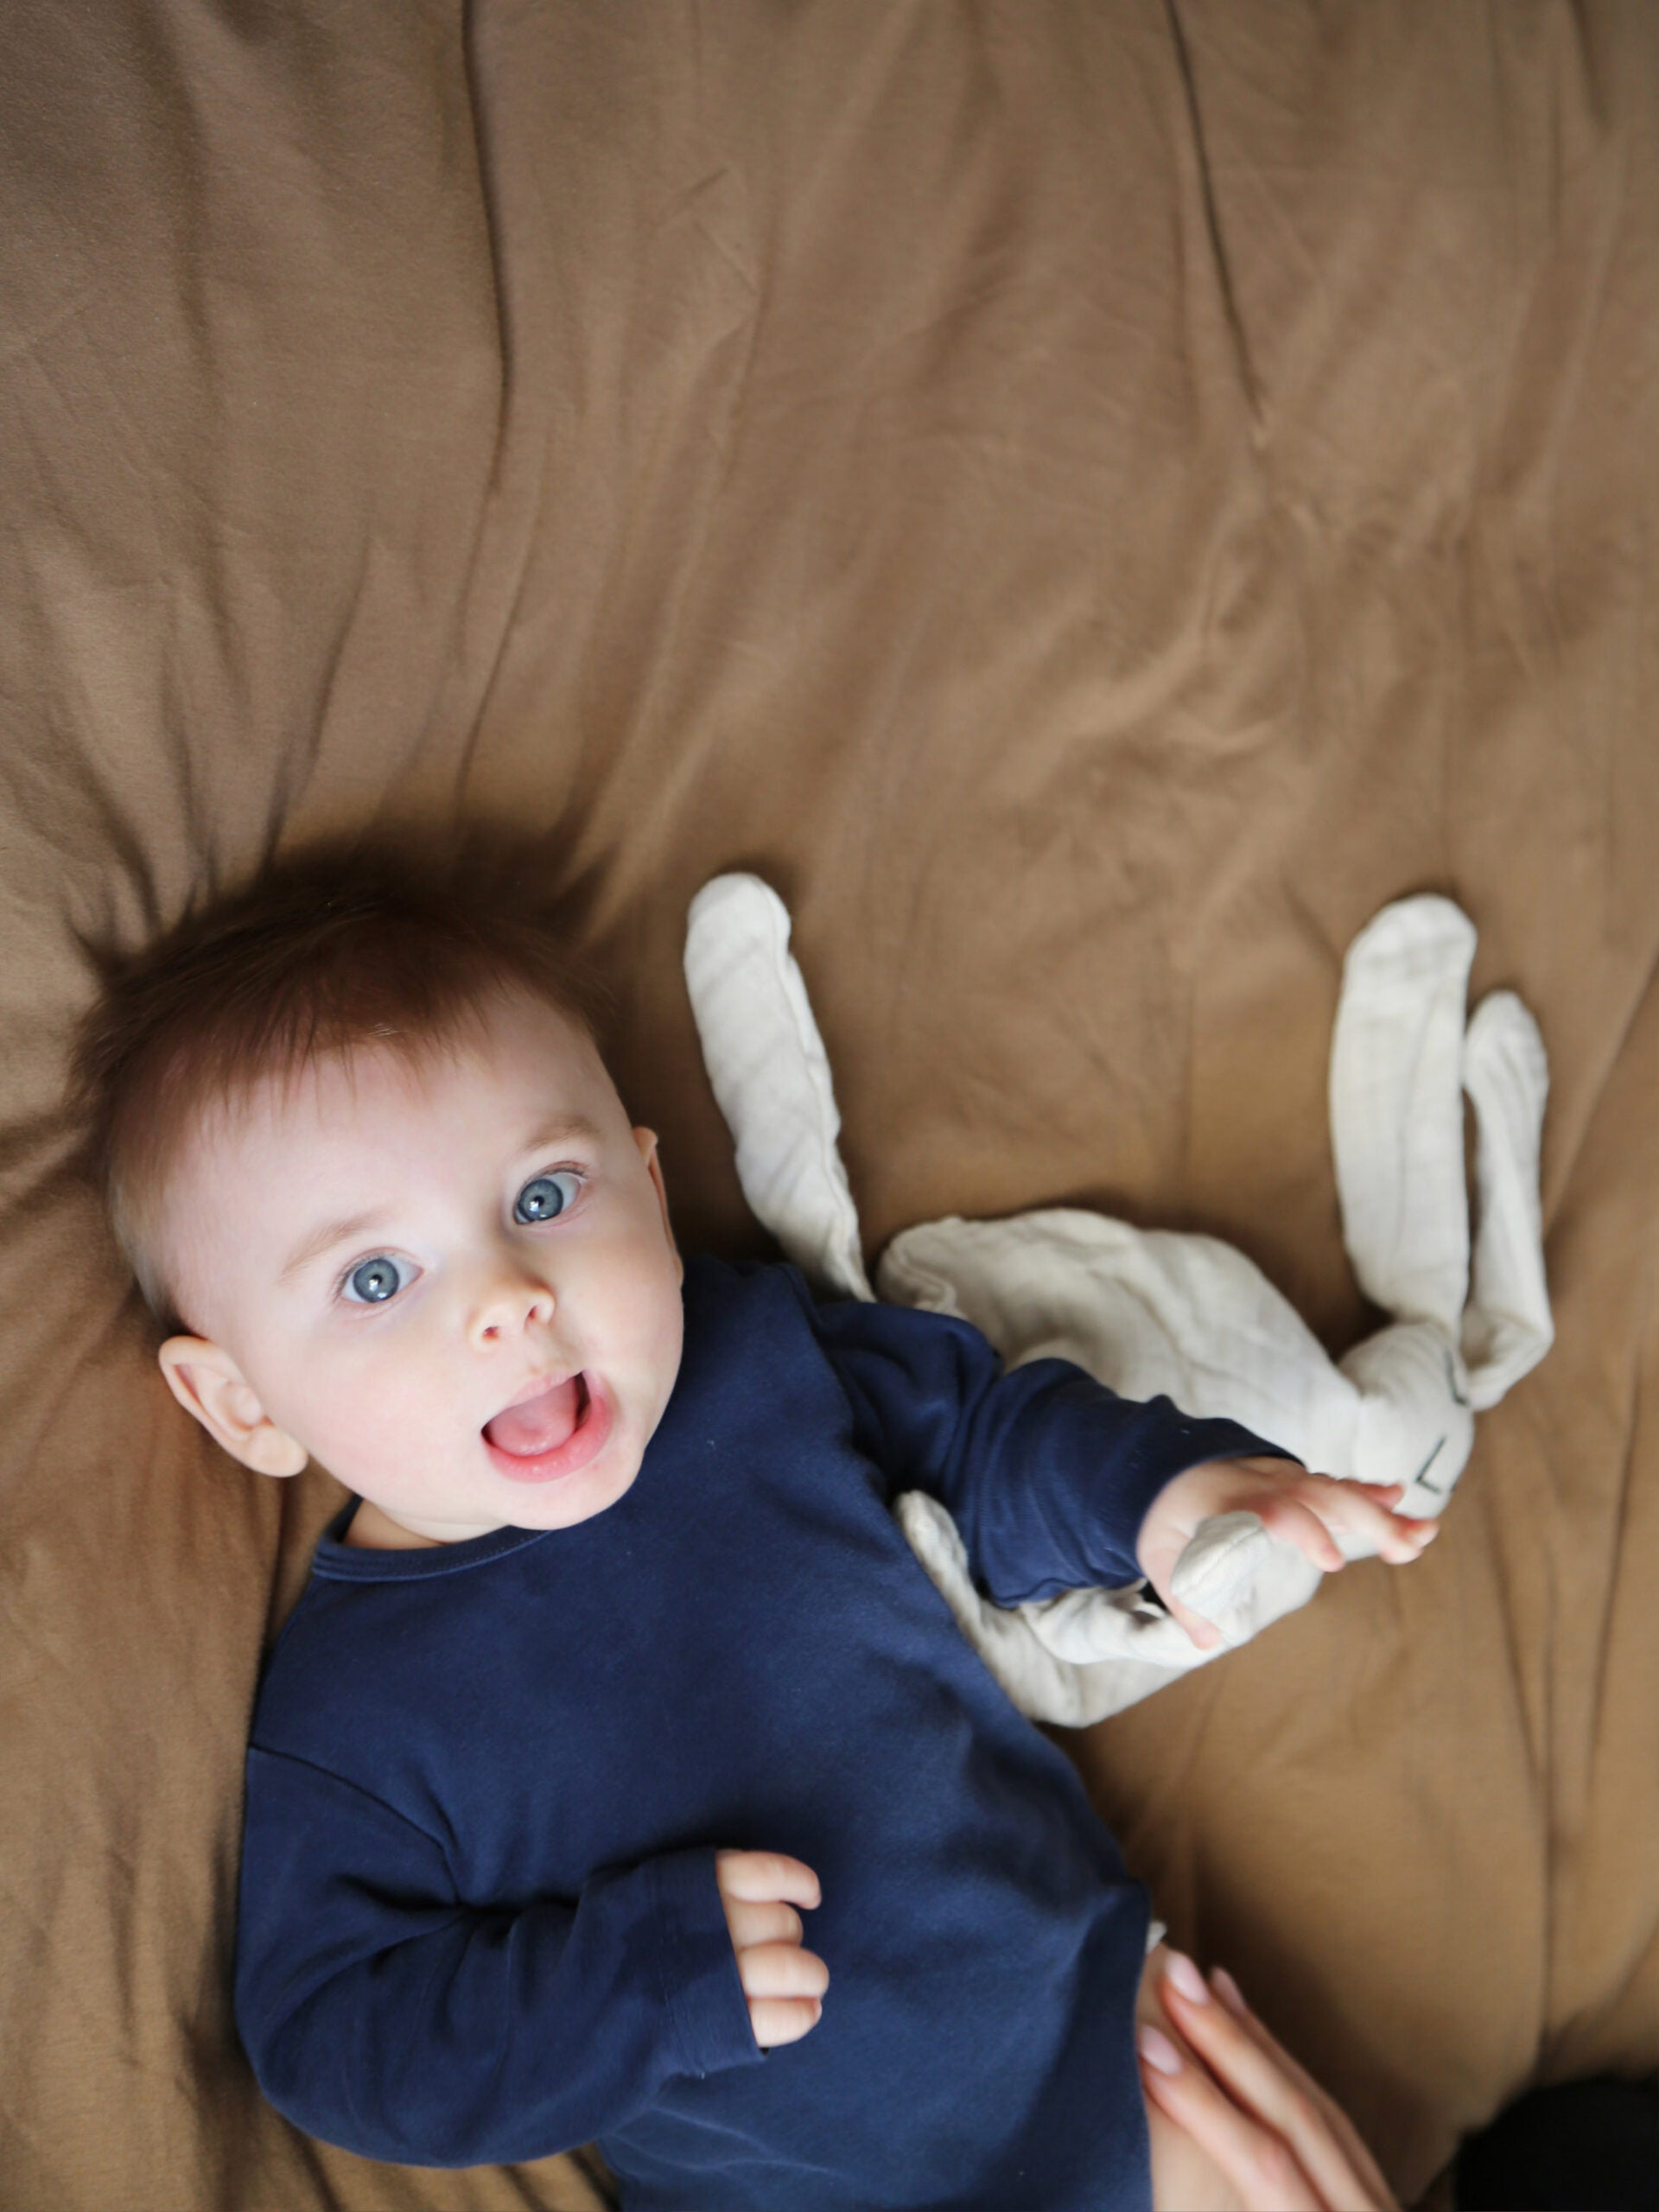 היי הגעתם לדף המוצר של חפץ מעבר נבי ארנבי Dream | בתמונה: תינוק בלונדיני עם עיניים כחולות שוכב על המיטה ומחזיק חפץ מעבר לבן